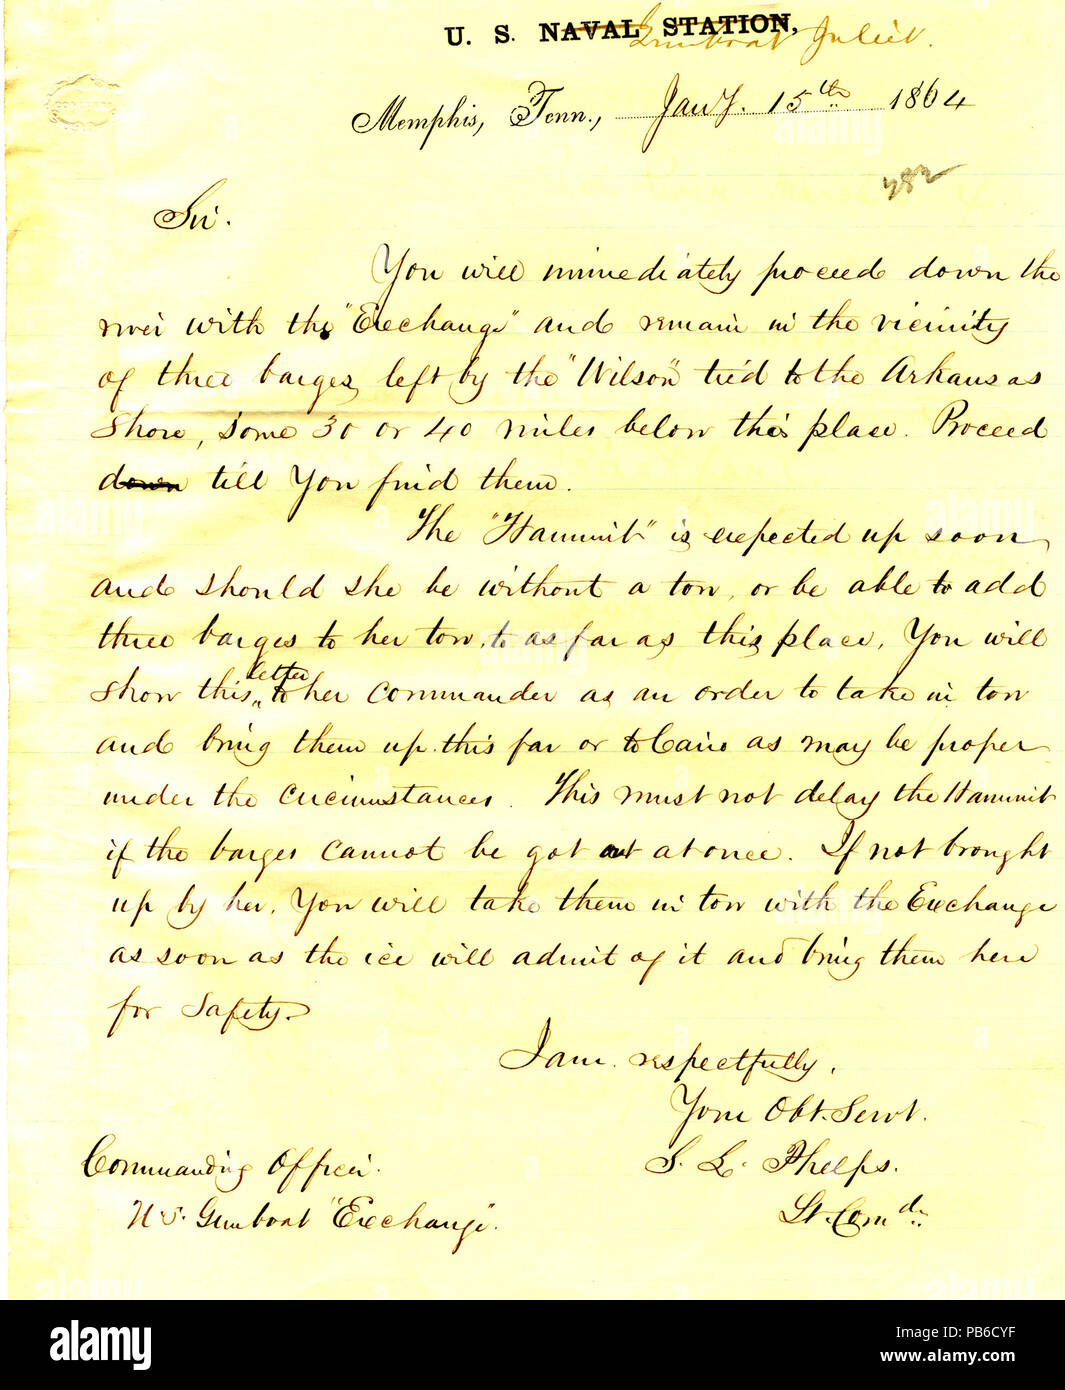 903 Lettre de Seth Ledyard Phelps, U.S. Naval Station, Memphis, Tennessee, de commandant de l'U. de S. S. change, le 15 janvier, 1864 Banque D'Images